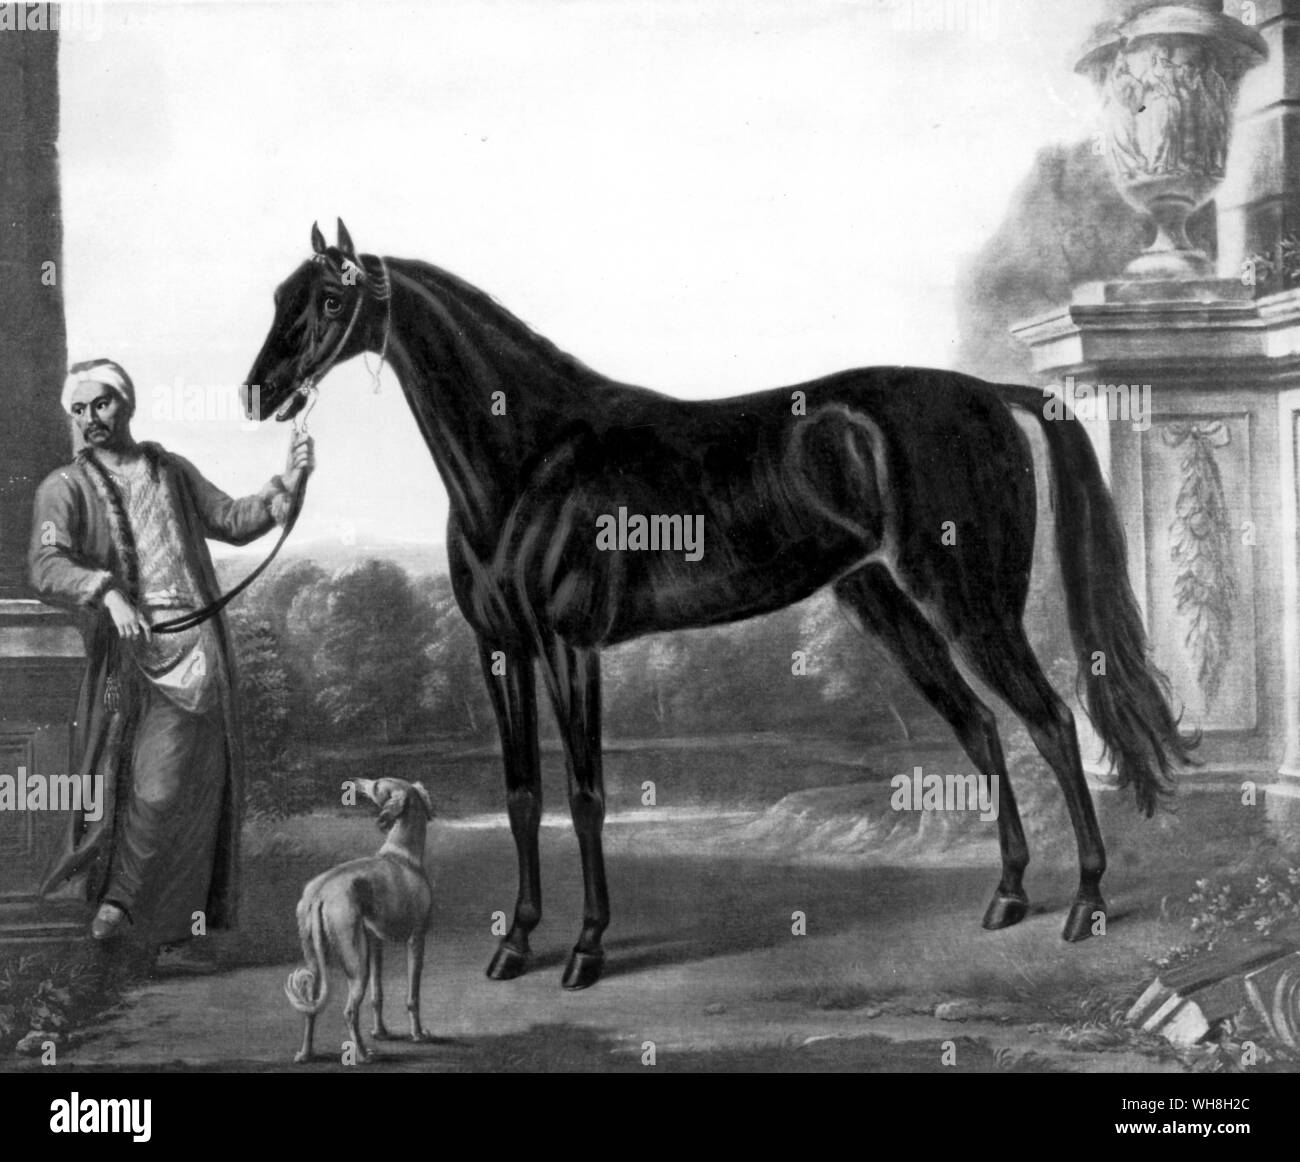 Cavalli famosi Foto e Immagini Stock in Bianco e Nero - Pagina 2 - Alamy